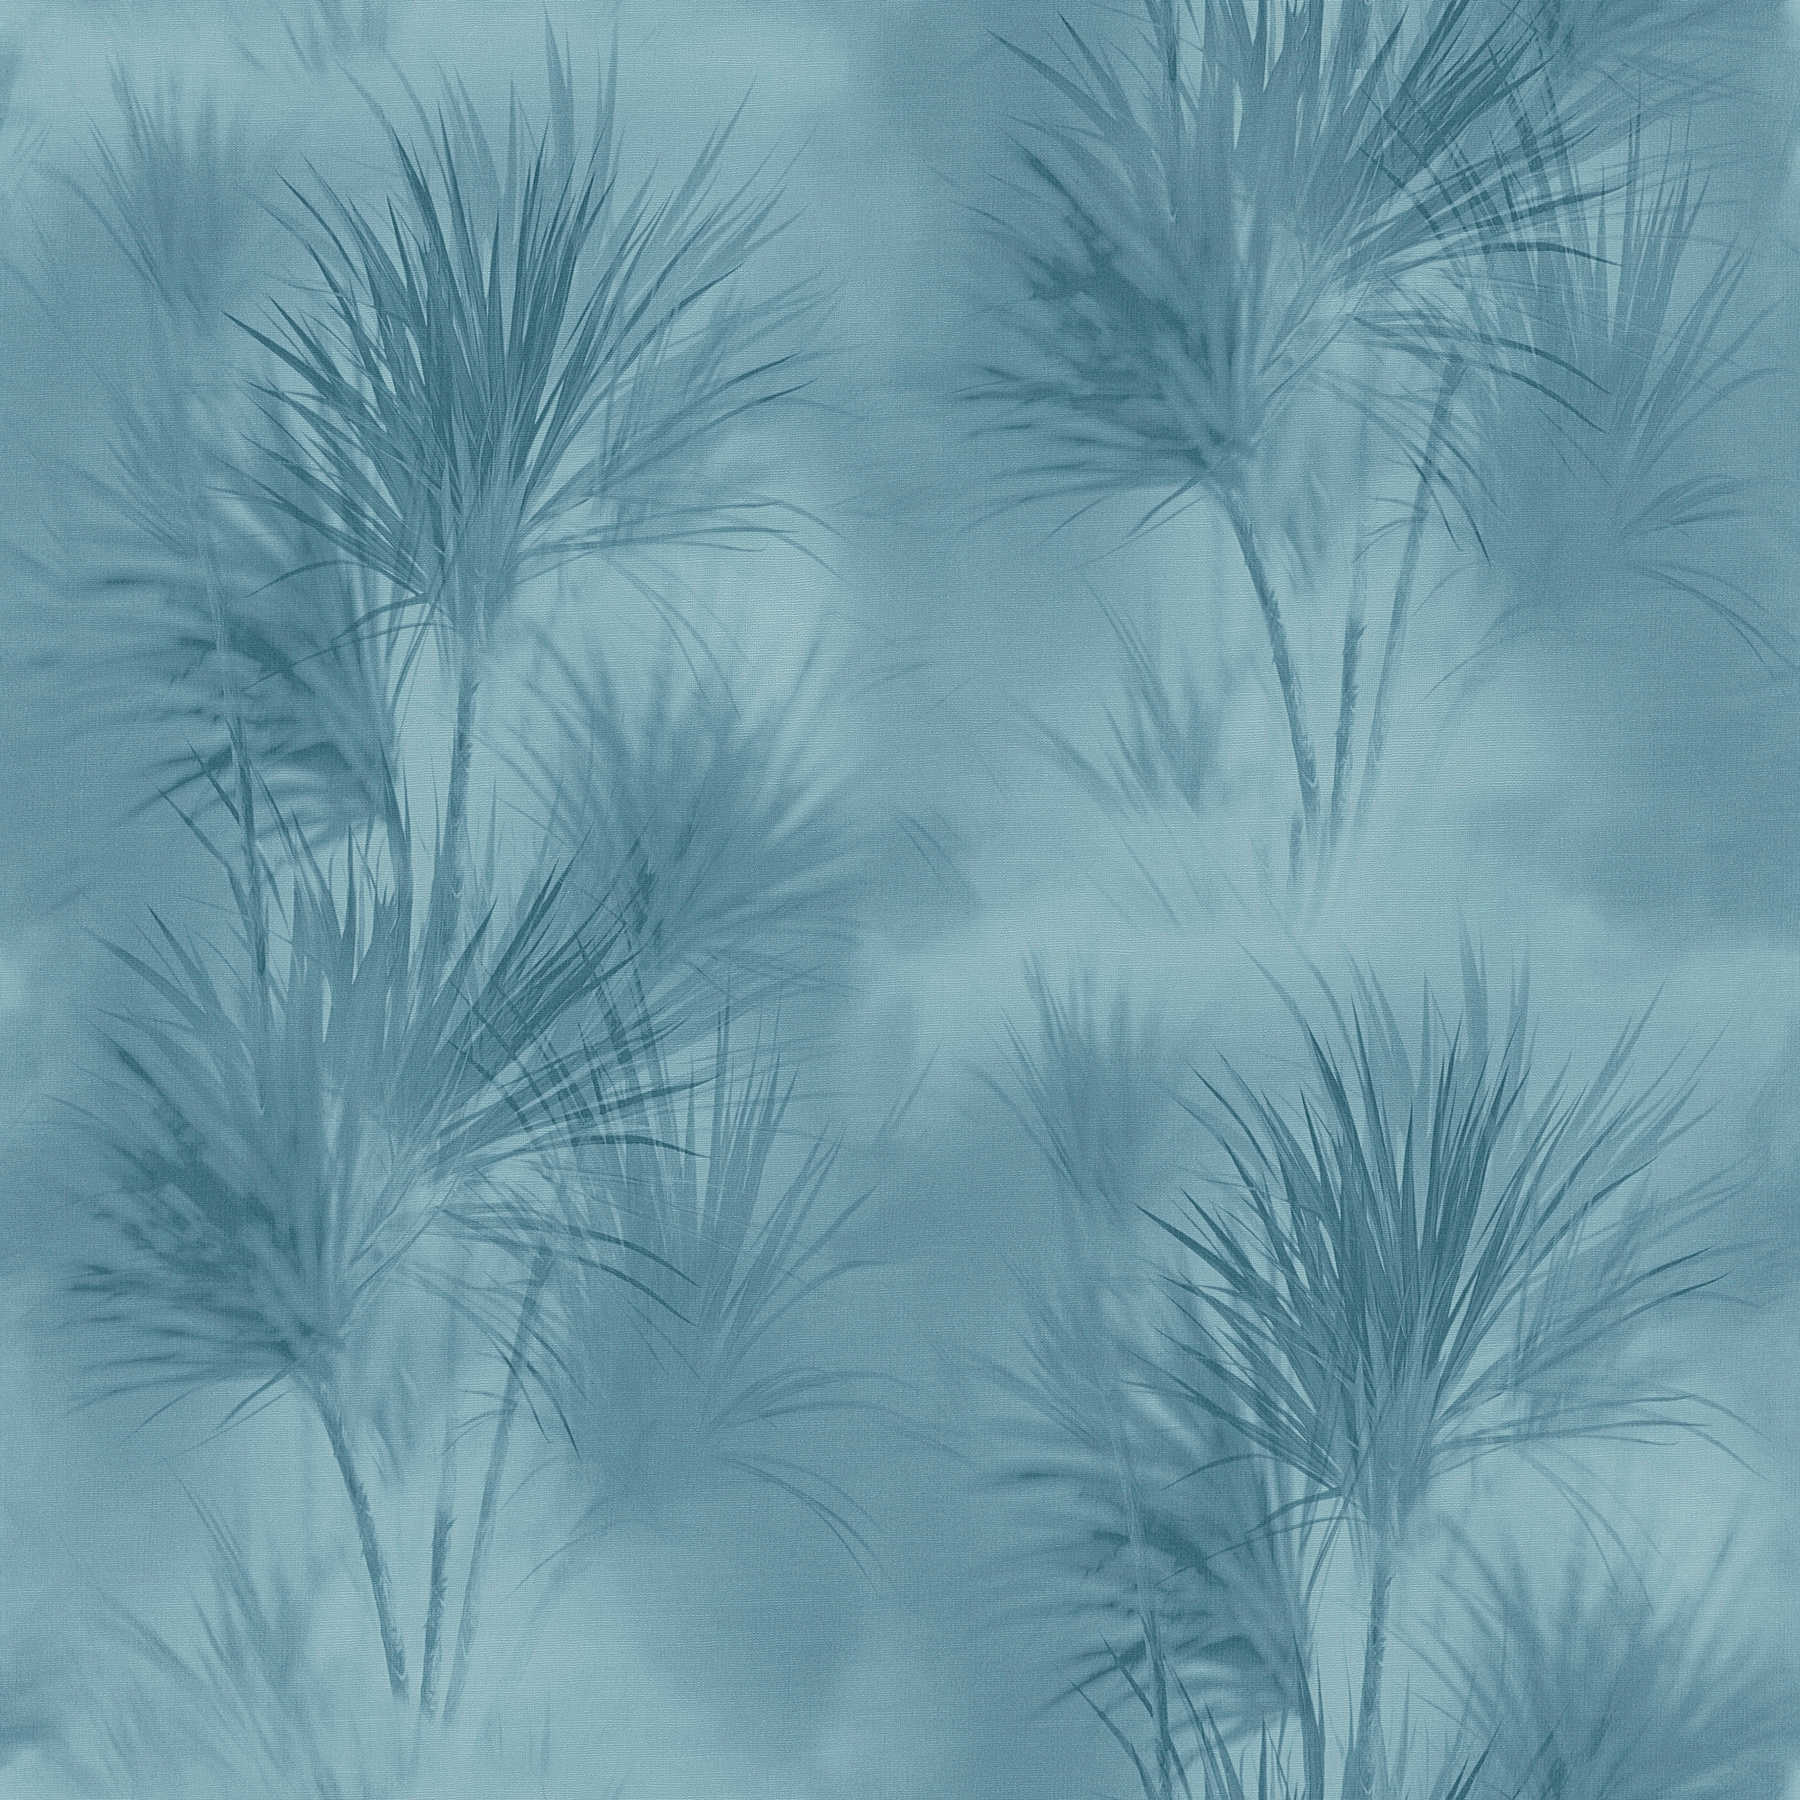 Vliestapete exotisches Blättermuster, natürlich – Blau
